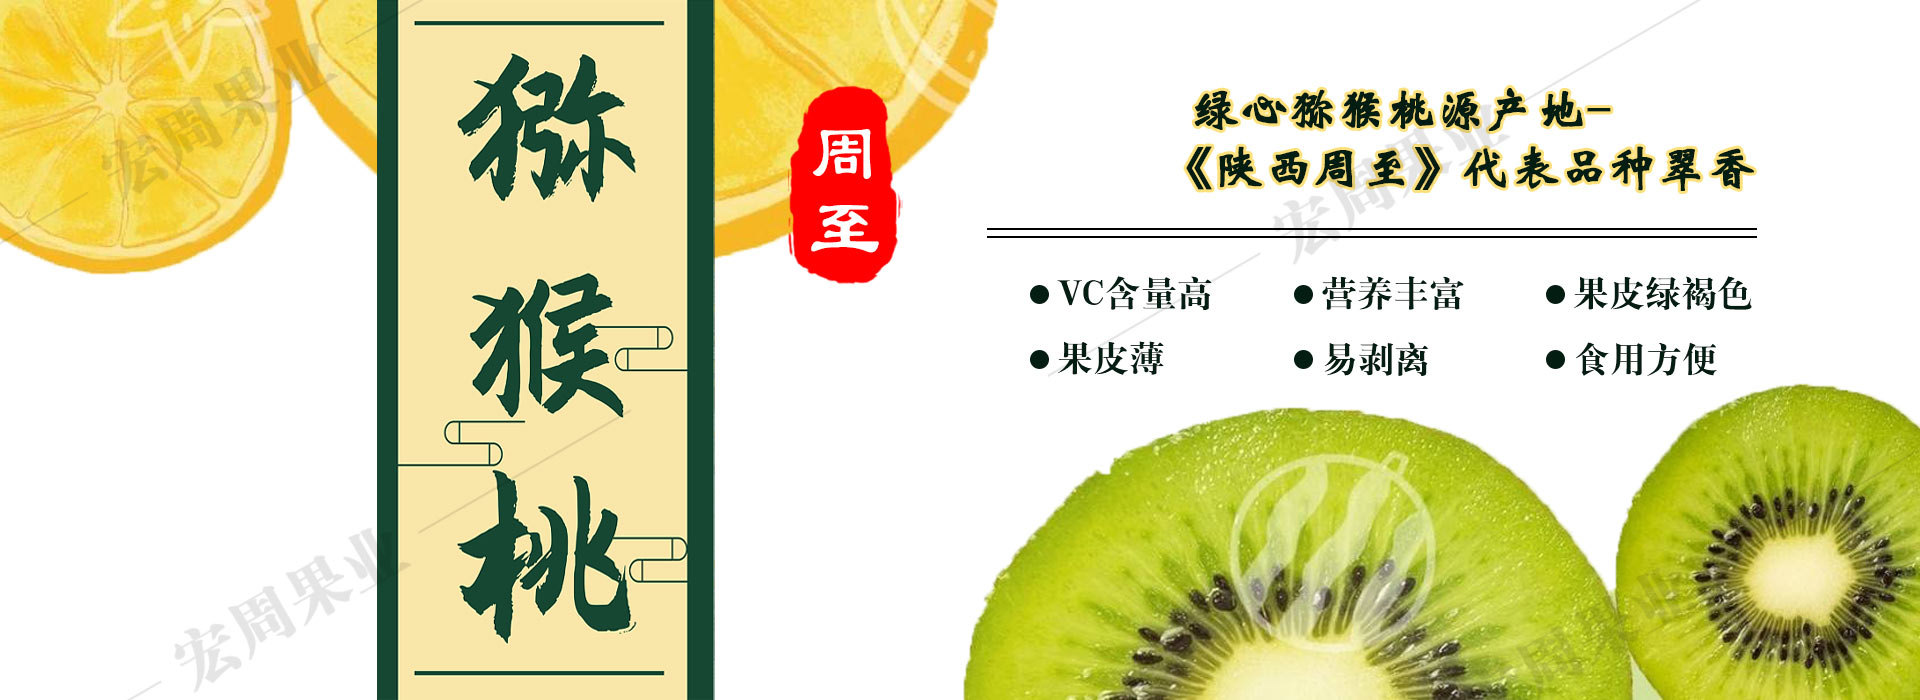 中国猕猴桃之乡、陕西水果特产、周至猕猴桃产种植基地